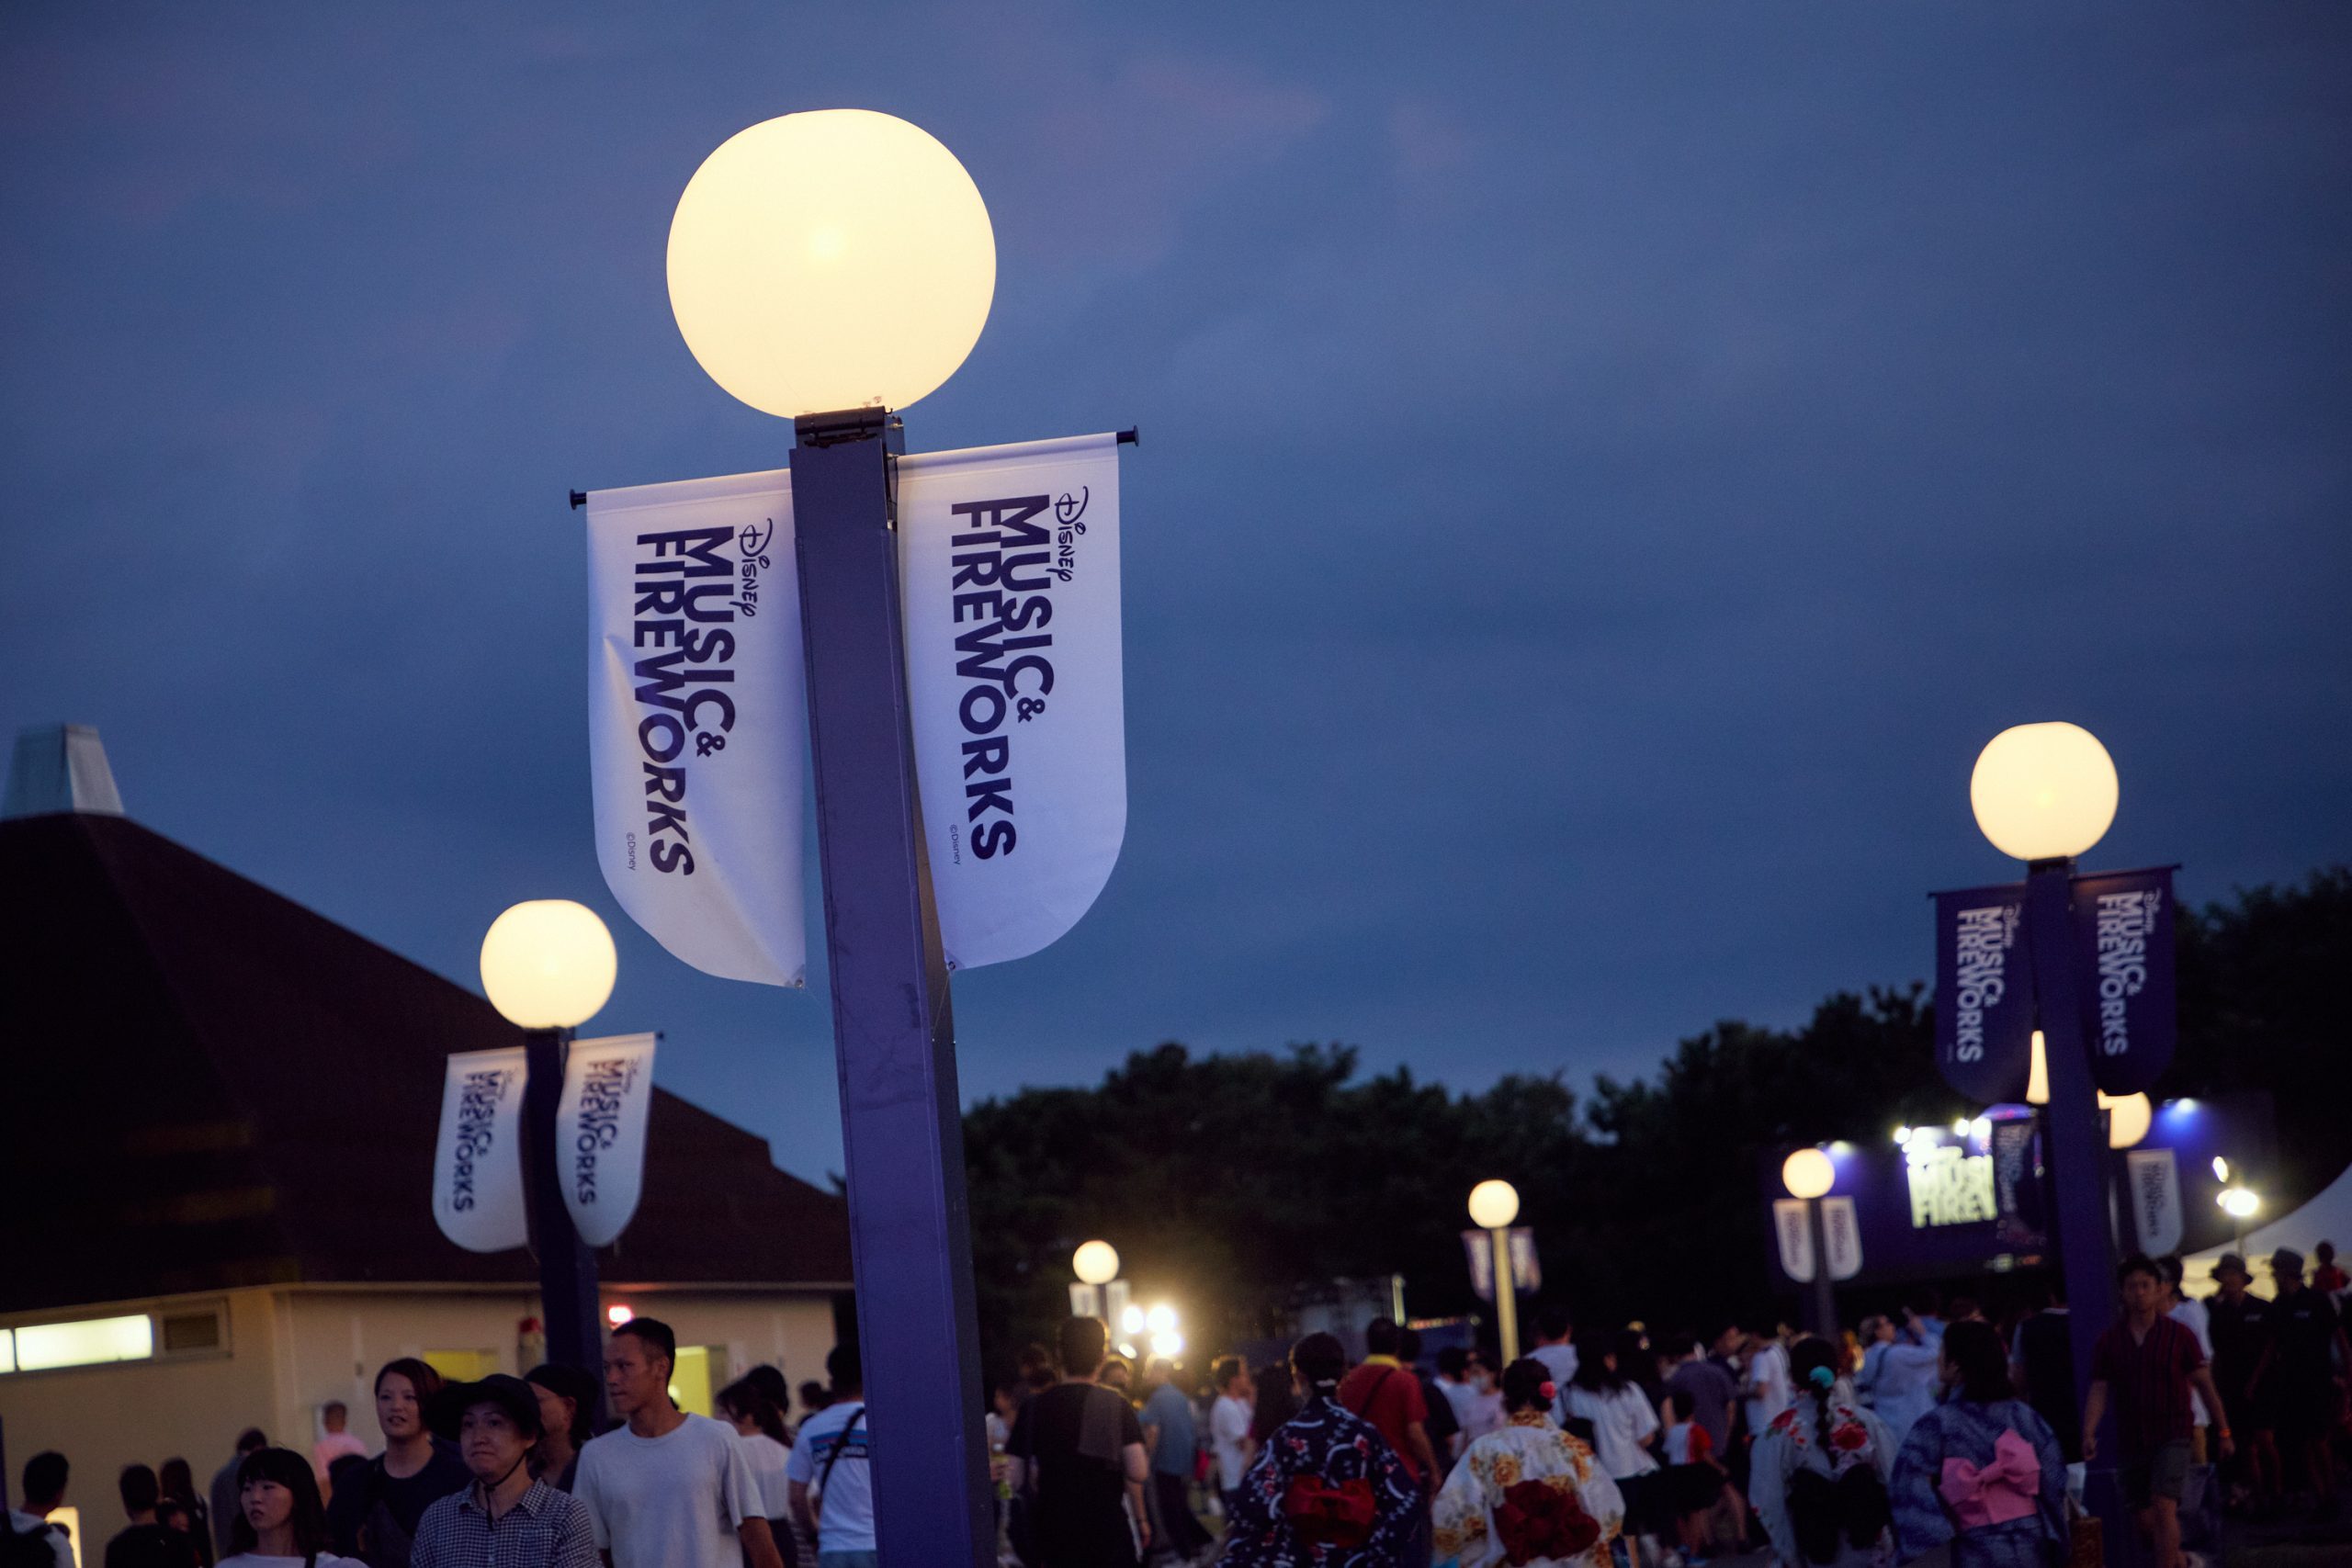 茨城県の国営ひたち海浜公園で開催された音楽と花火のエンターテイメント「Disney Music & Fireworks」